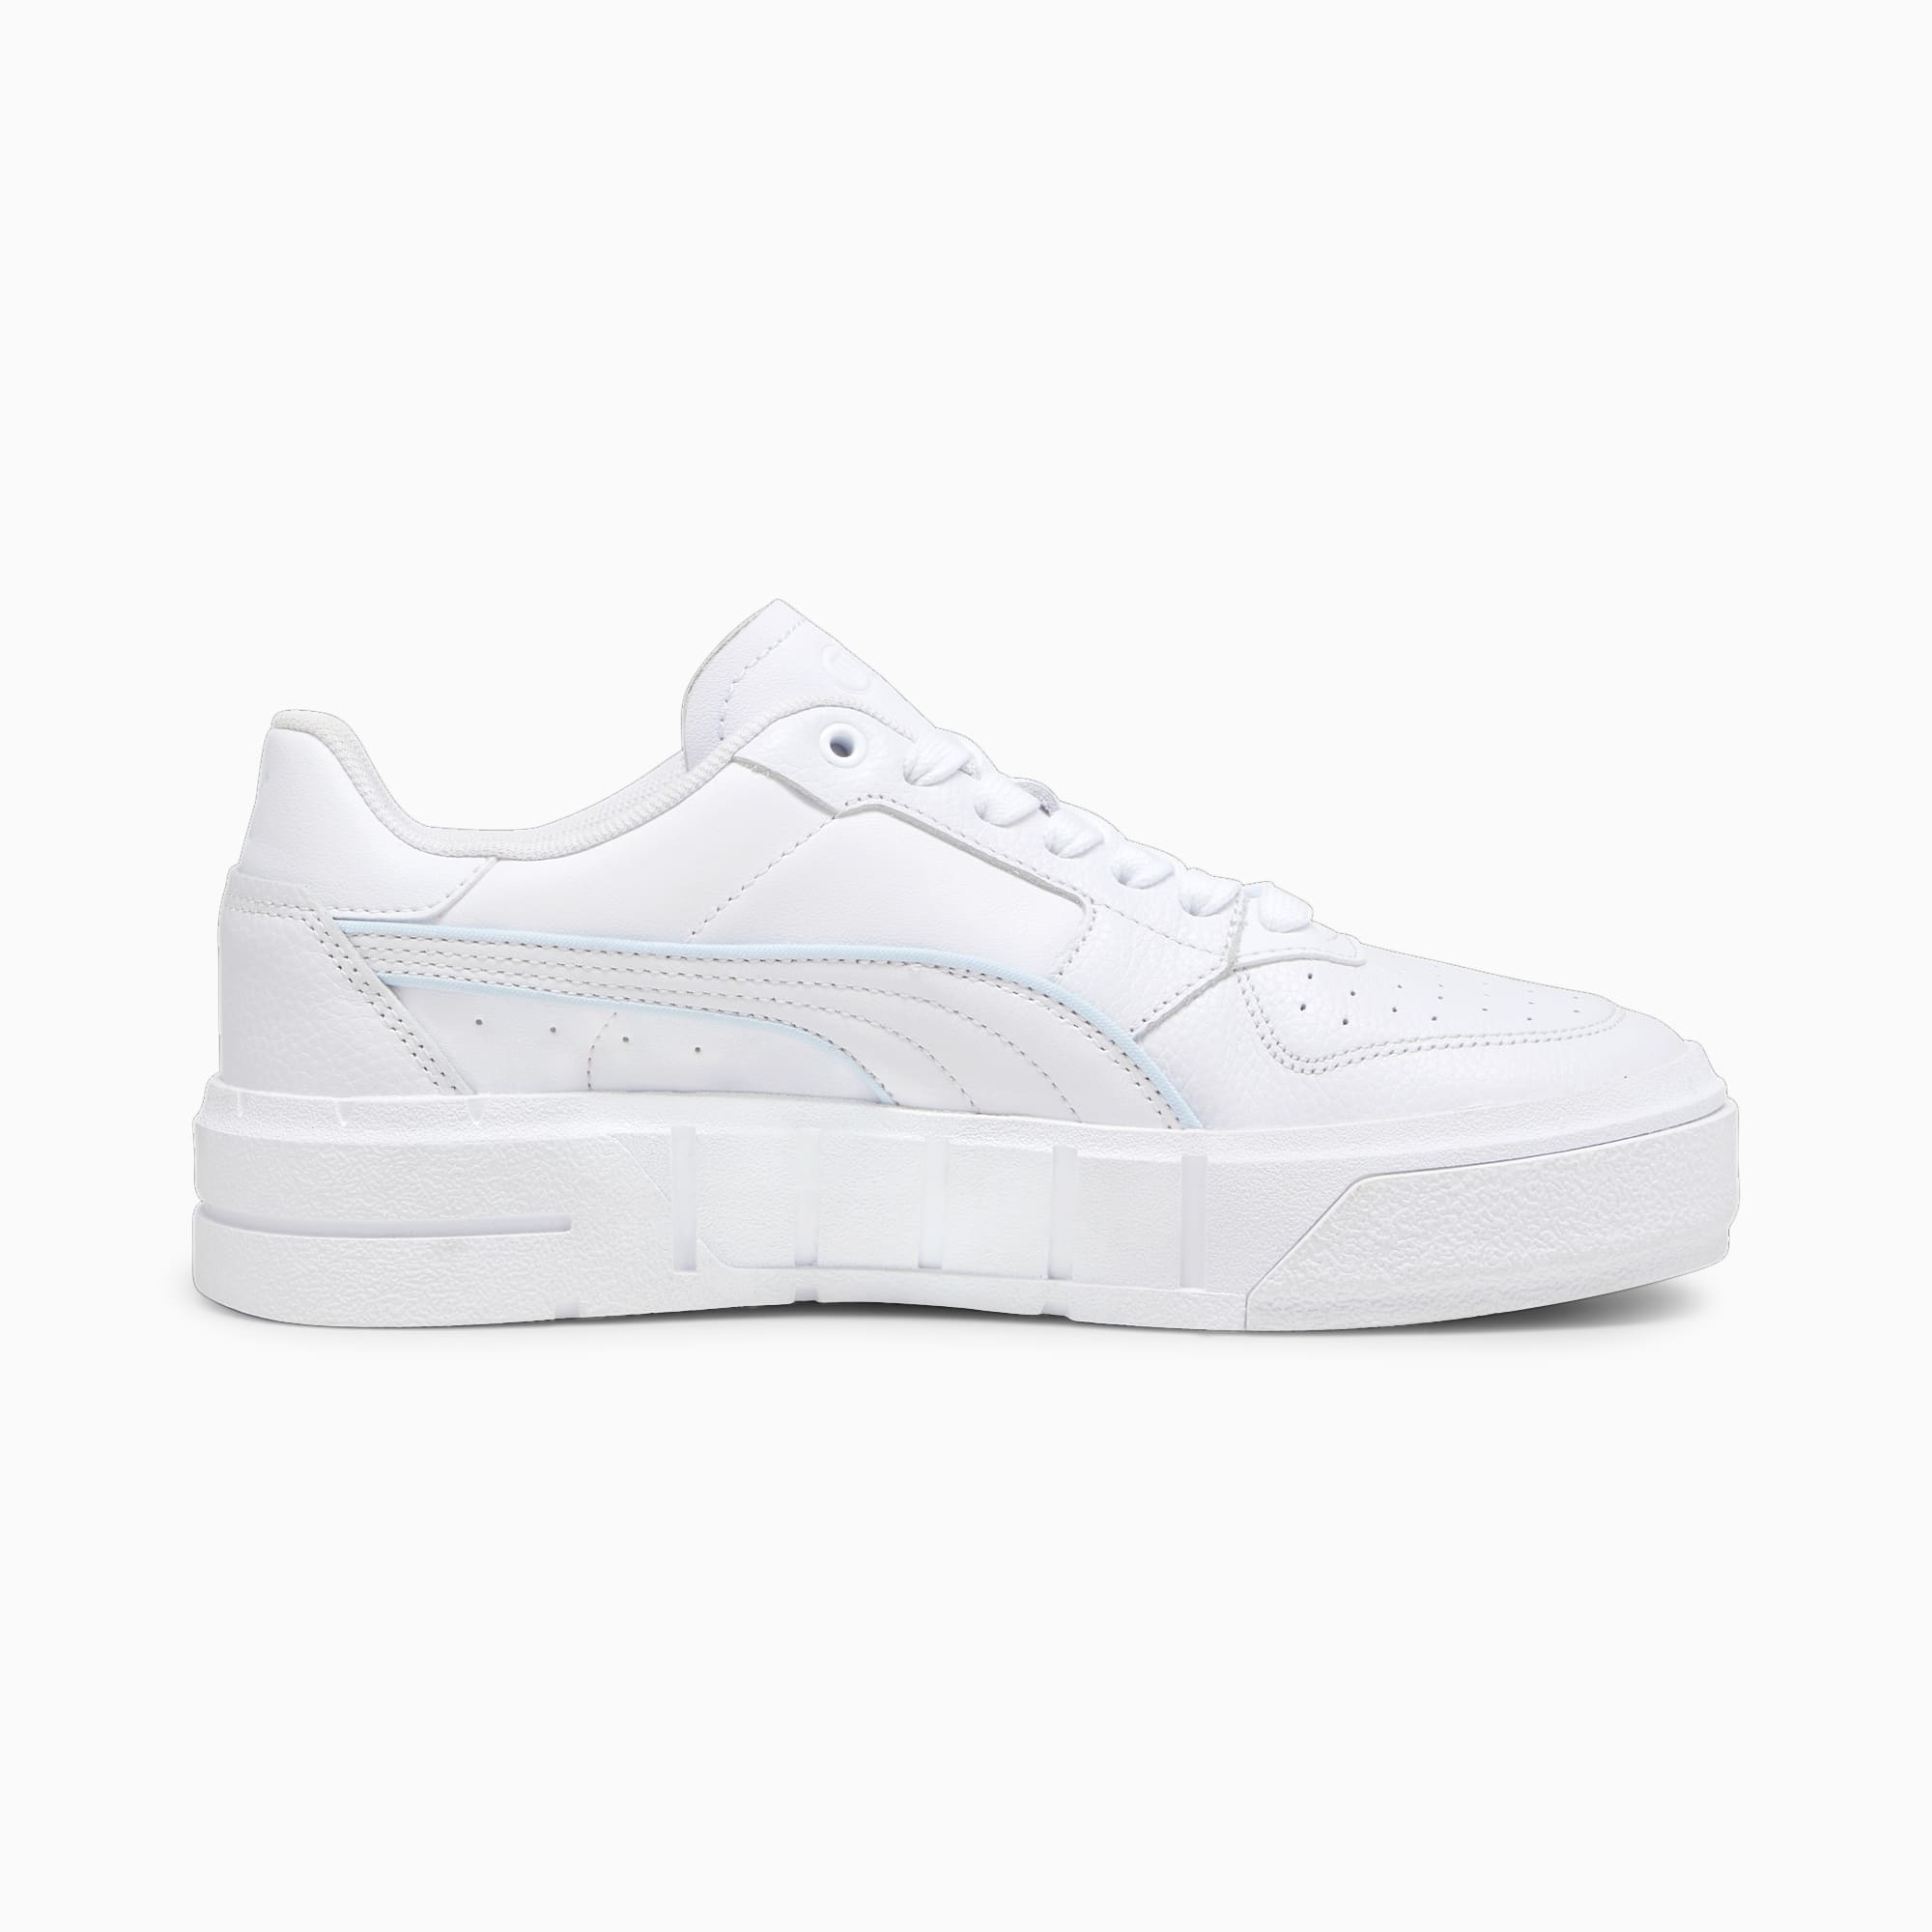 Sneaker Cali Court Pop Da Donna, Bianco/Blu/Altro